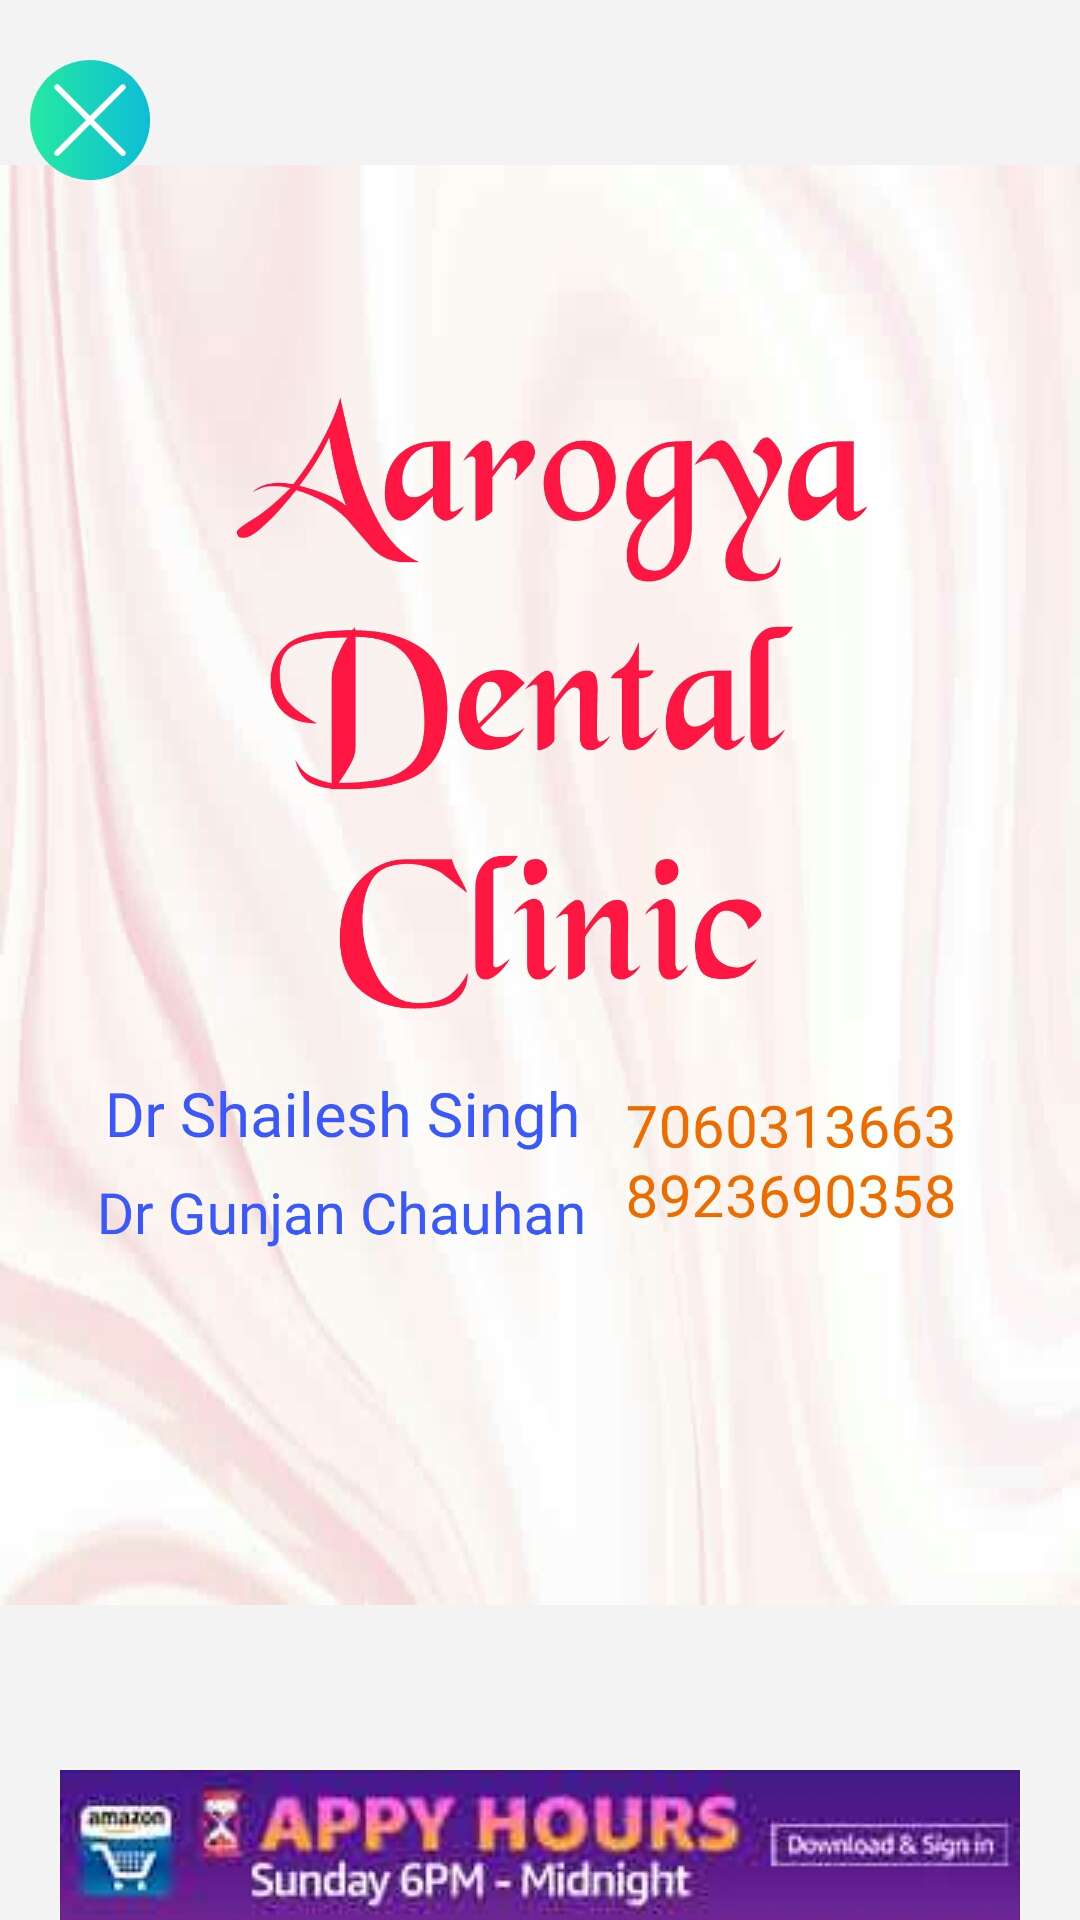 Aarogya Dental Clinic